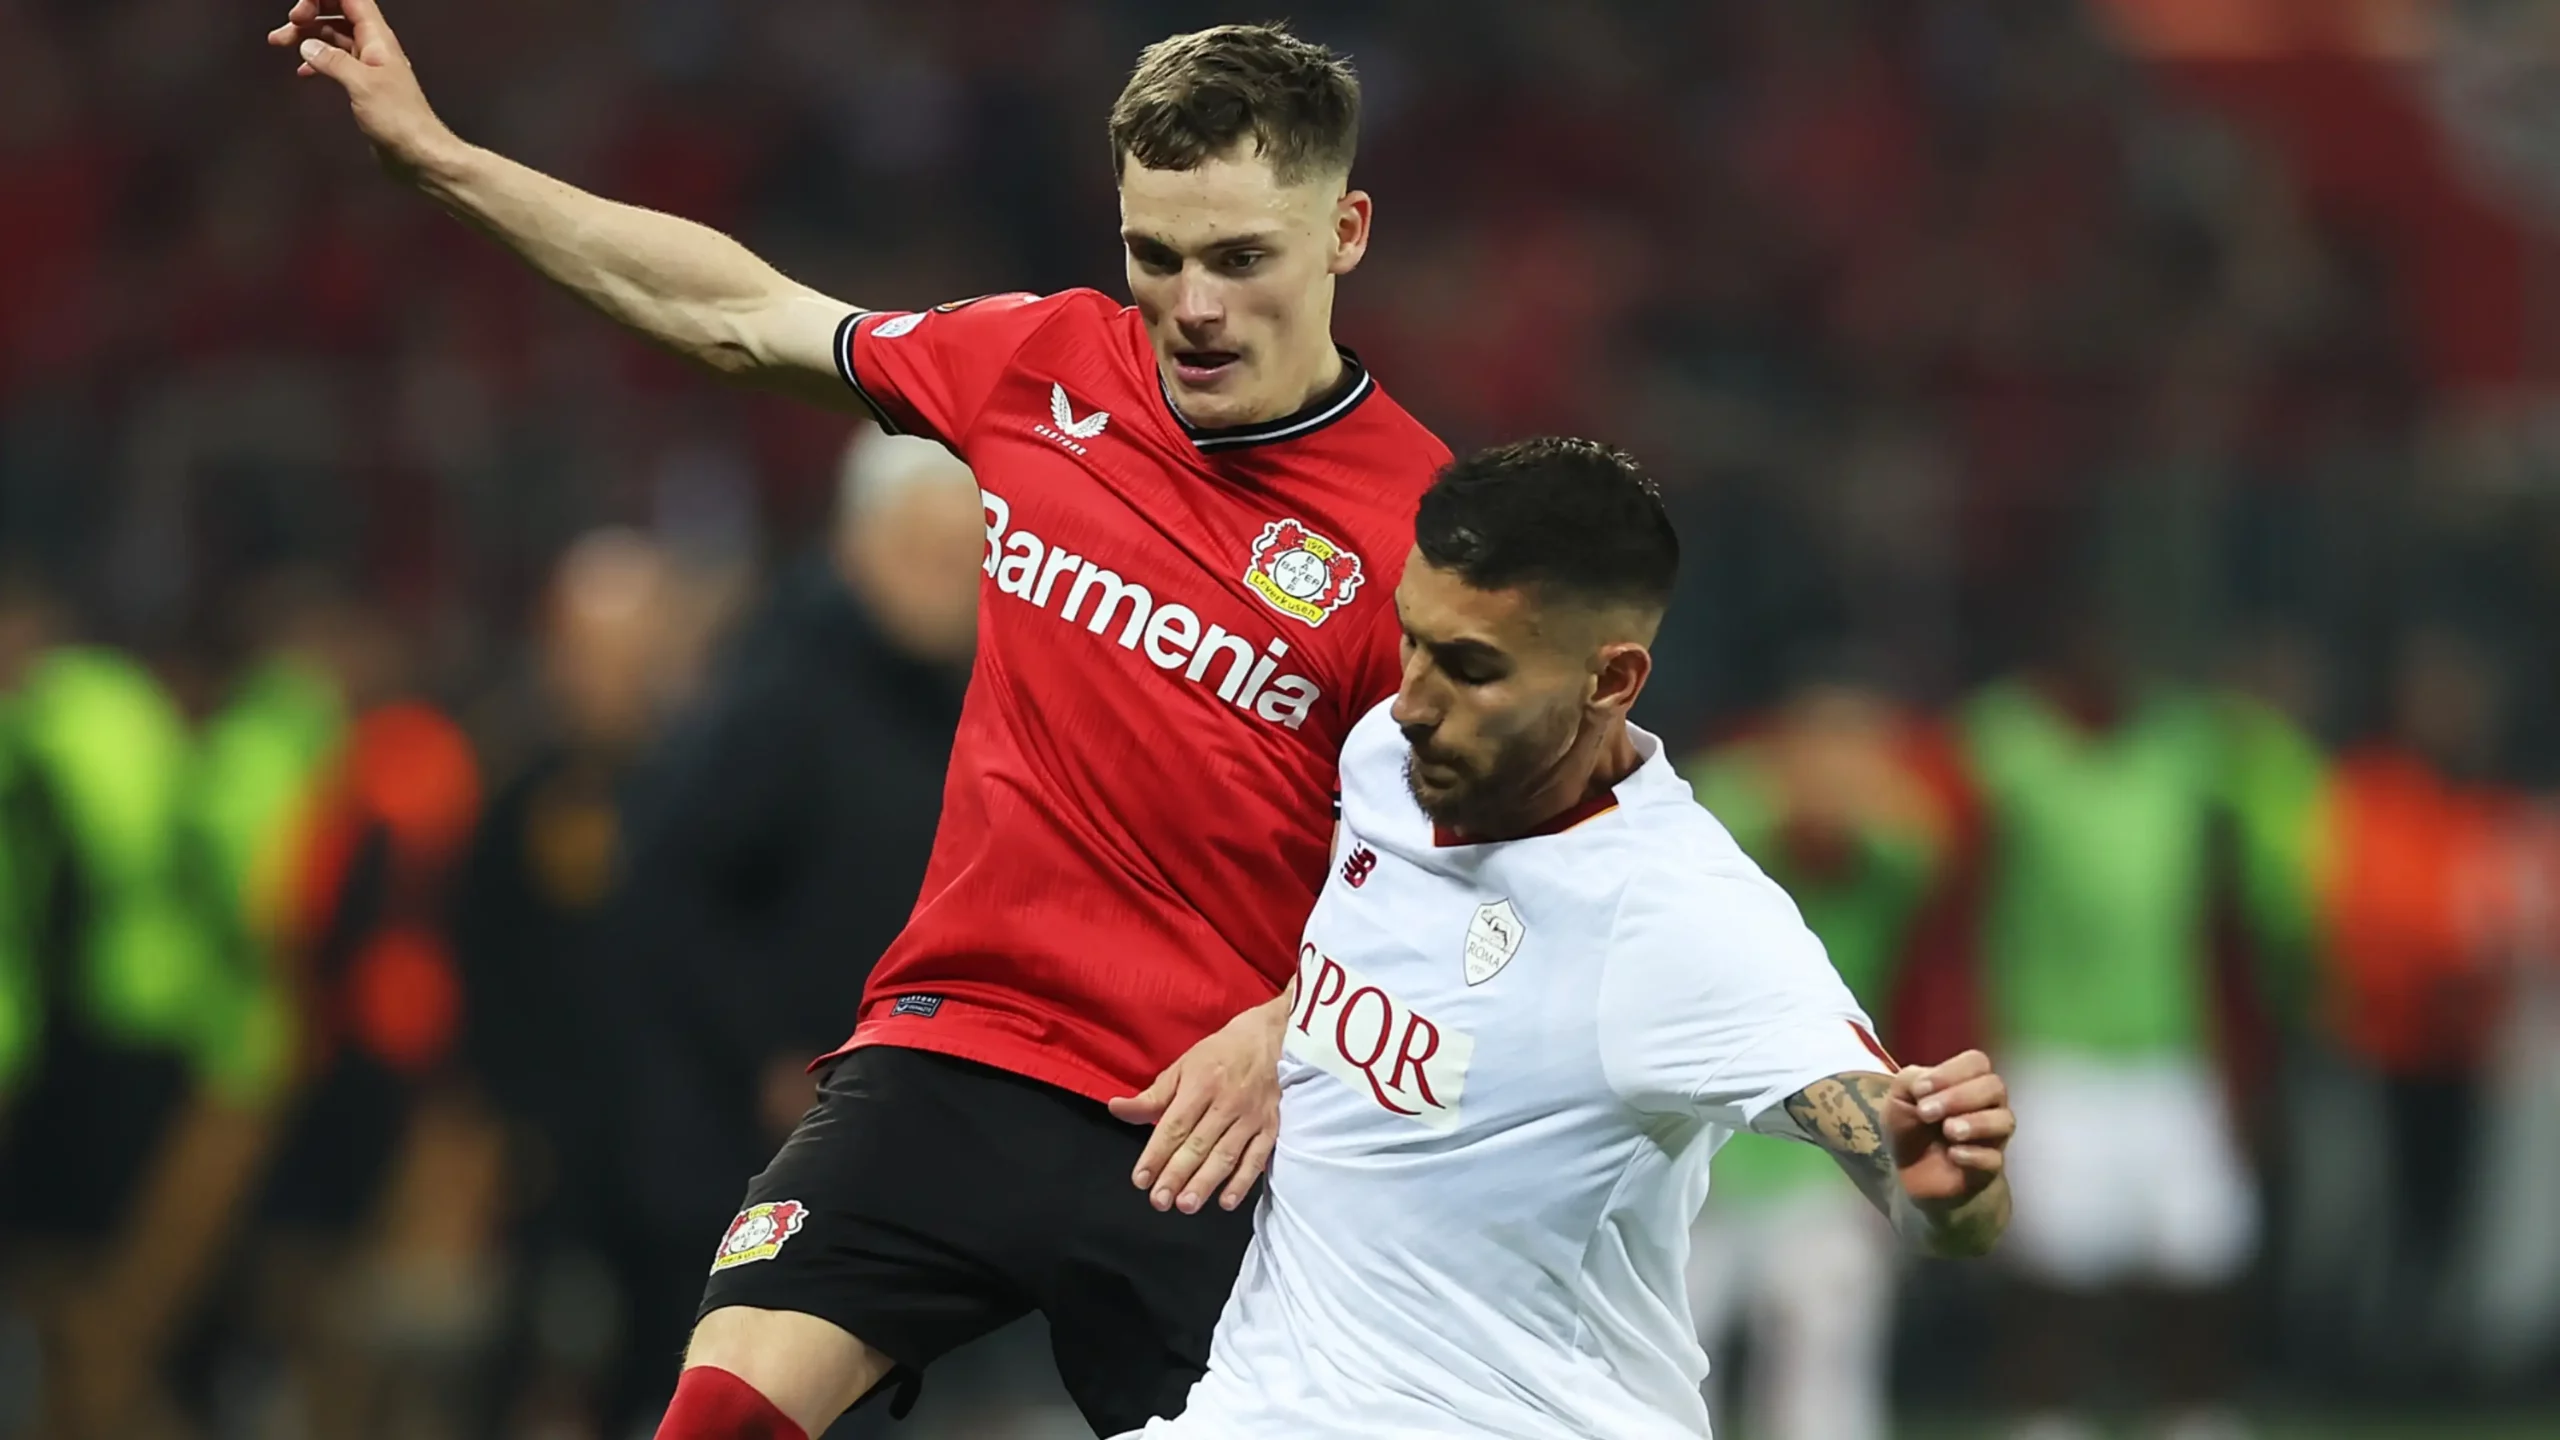 Bayer Leverkusen-Roma, alle 21 torna l'Europa League: come vederla in streaming gratis e le probabili formazioni